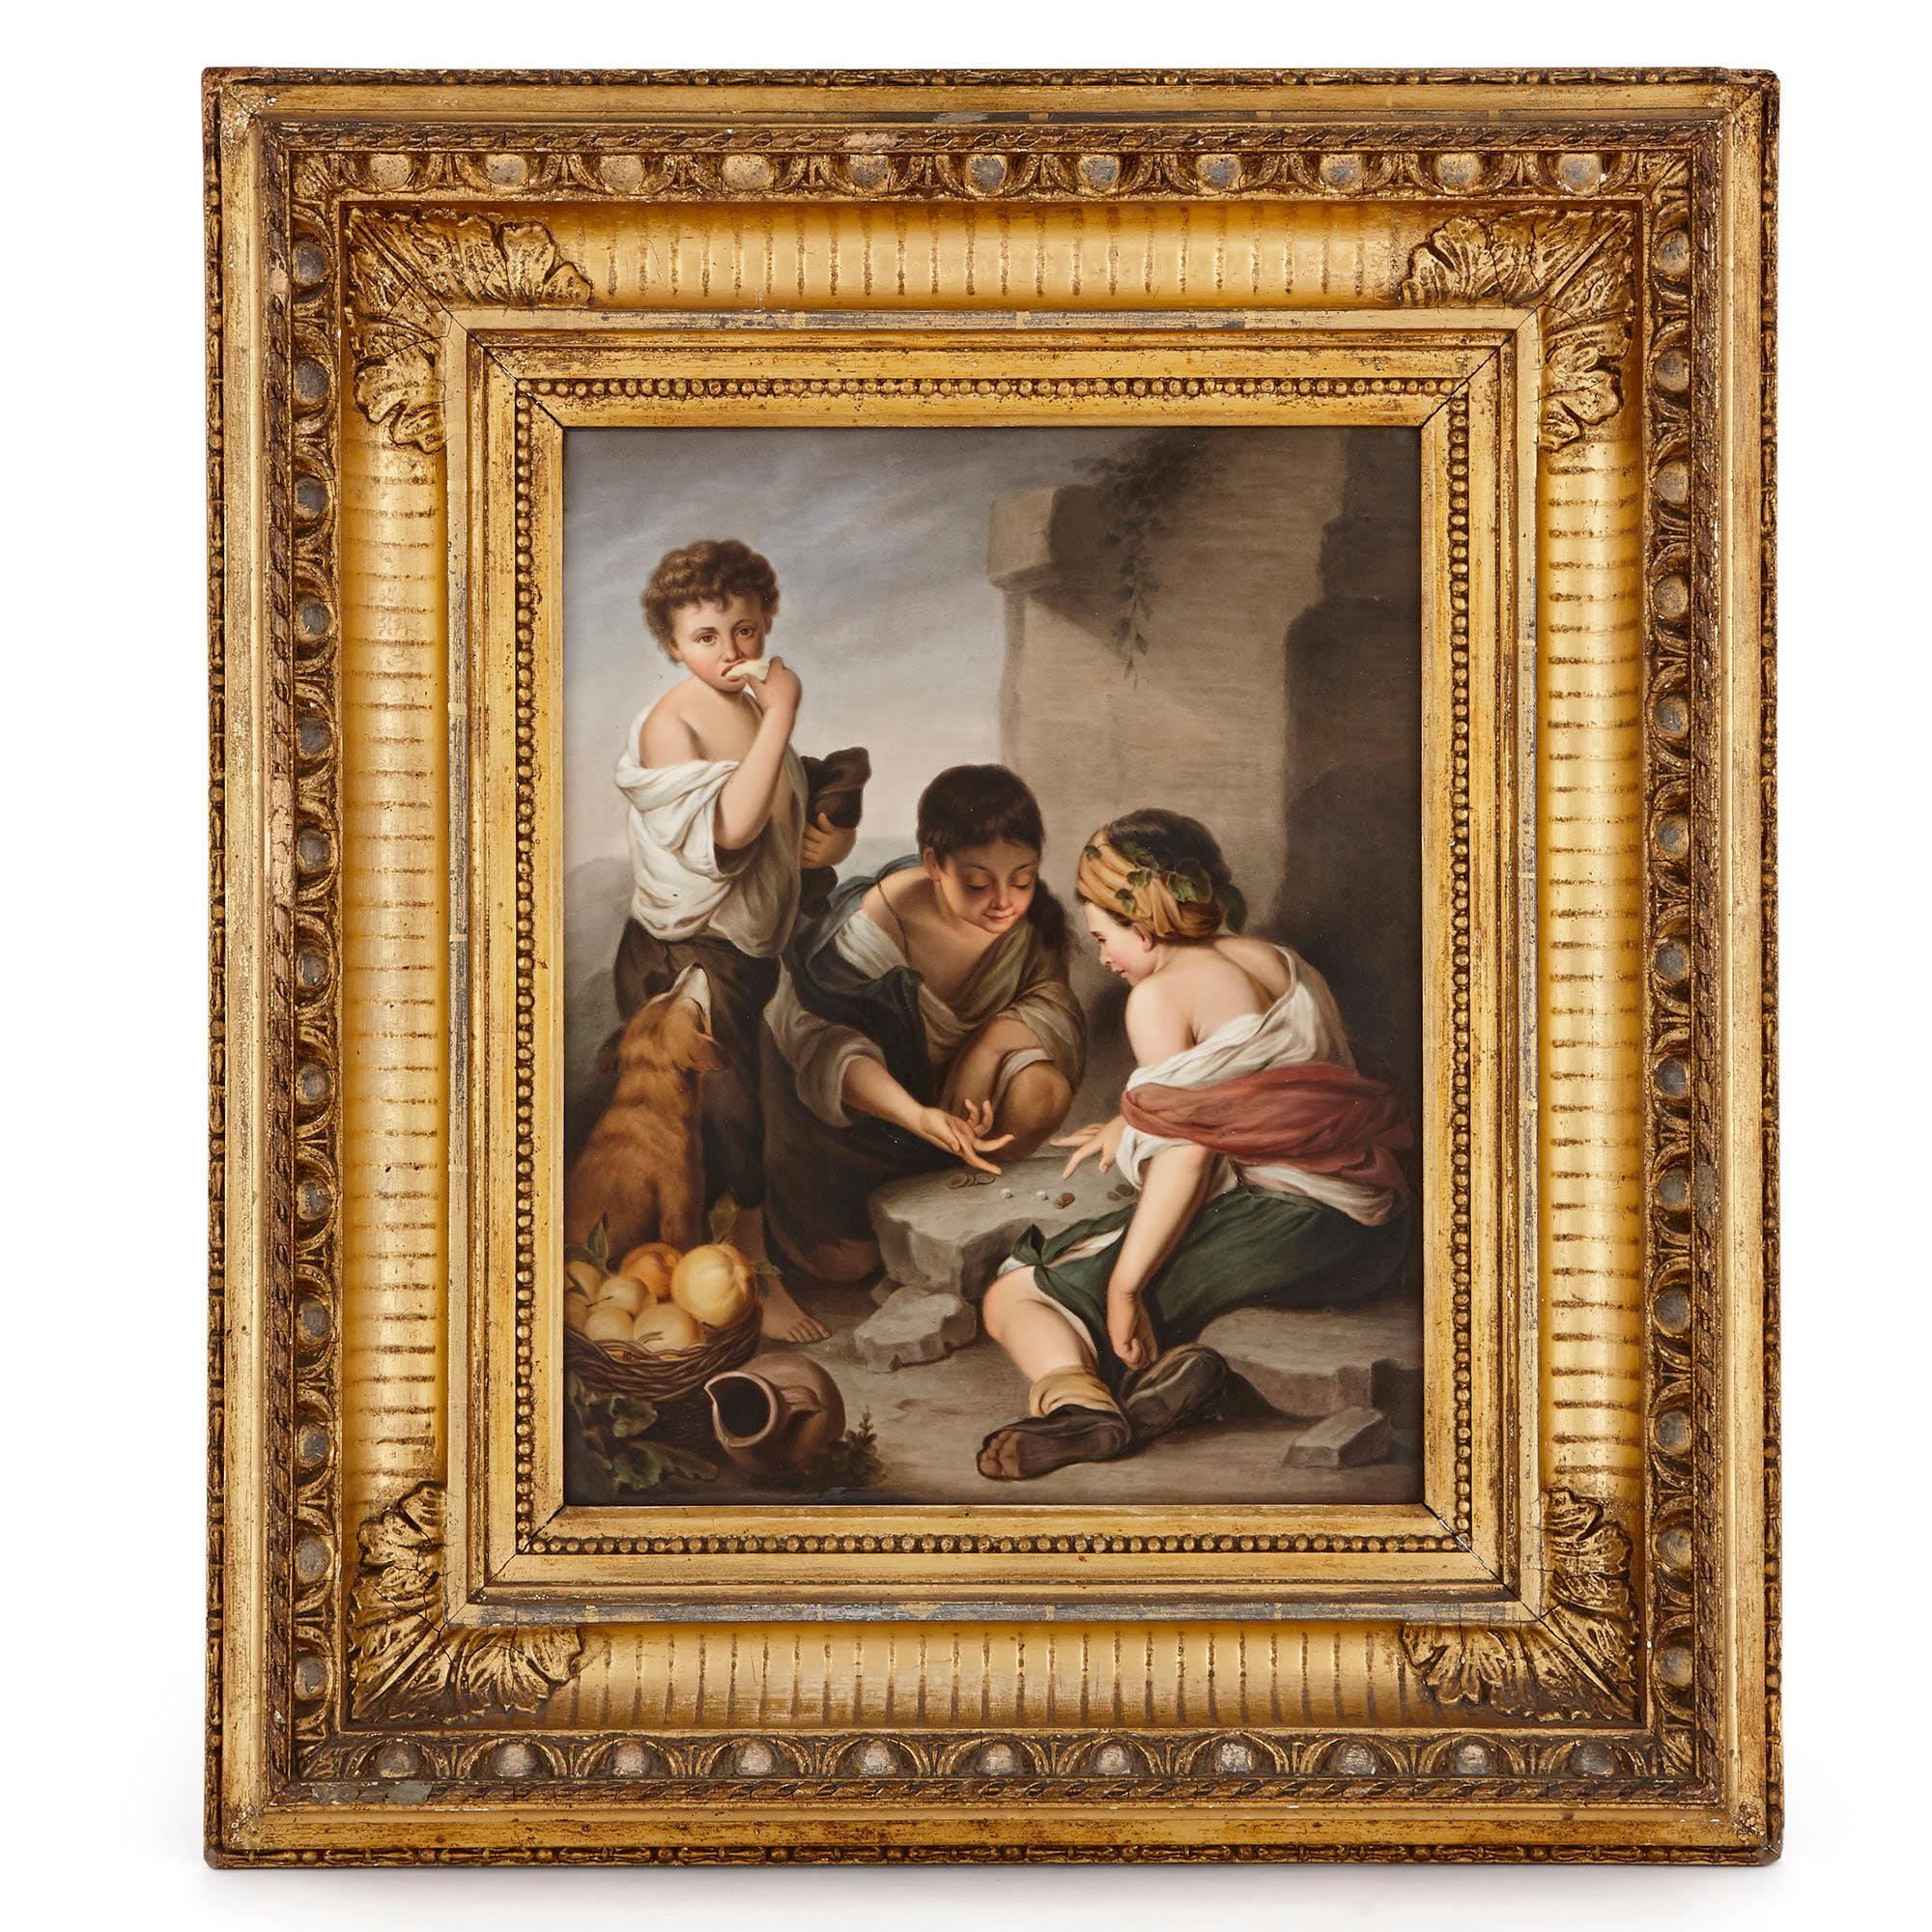 Diese traumhaften Porzellantafeln wurden um 1860 von der renommierten Königlichen Porzellan Manufaktur (KPM) hergestellt (gegründet 1763). Die Tafeln zeigen wunderschöne Gemälde, die auf Werken des berühmten Barockmalers Bartolome Esteban Murillo